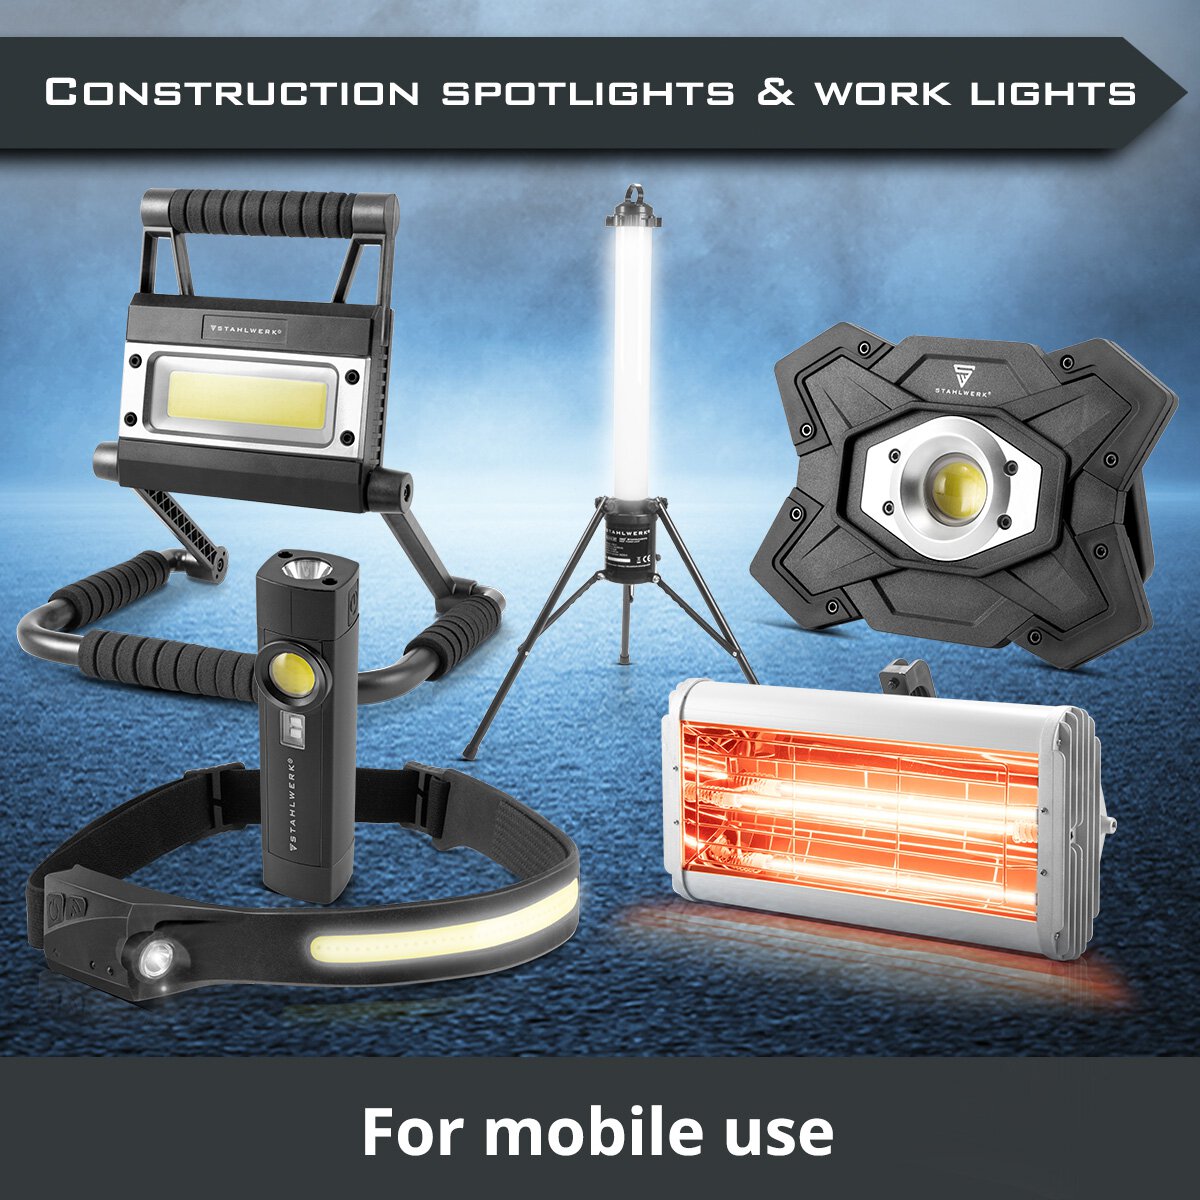 Construction spotlights & work lights